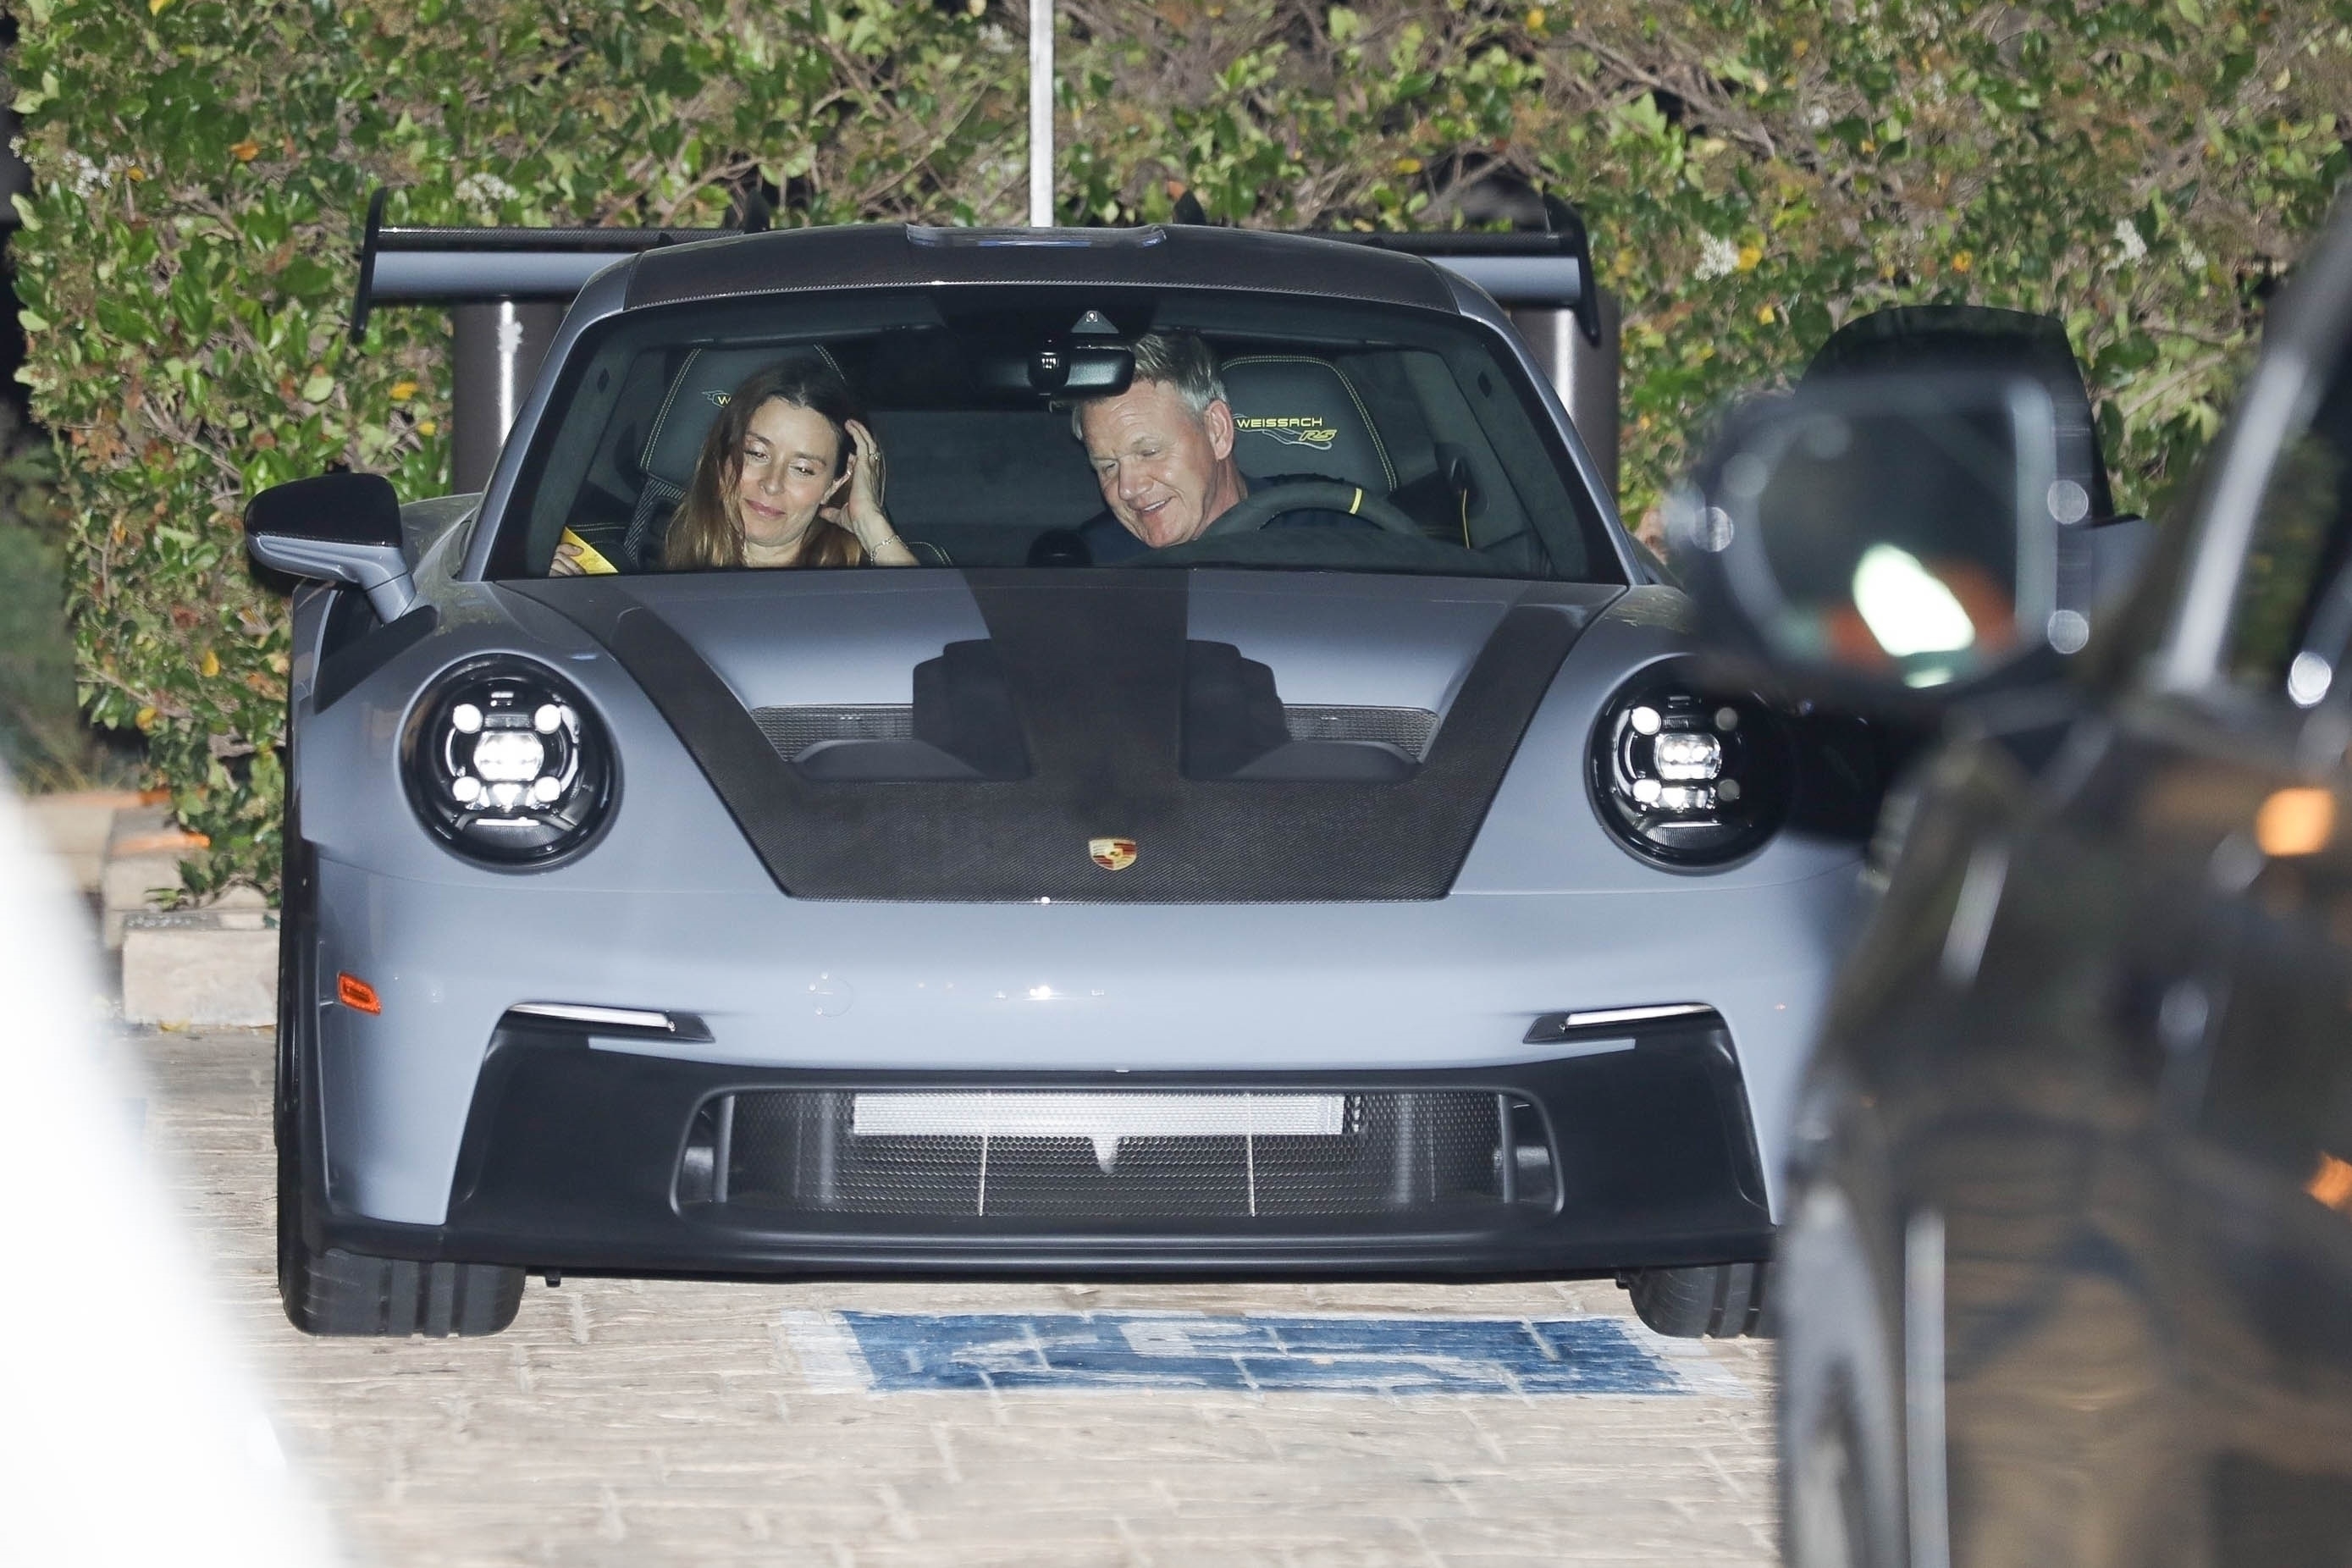 La pareja fue vista conduciendo juntos un Porsche.